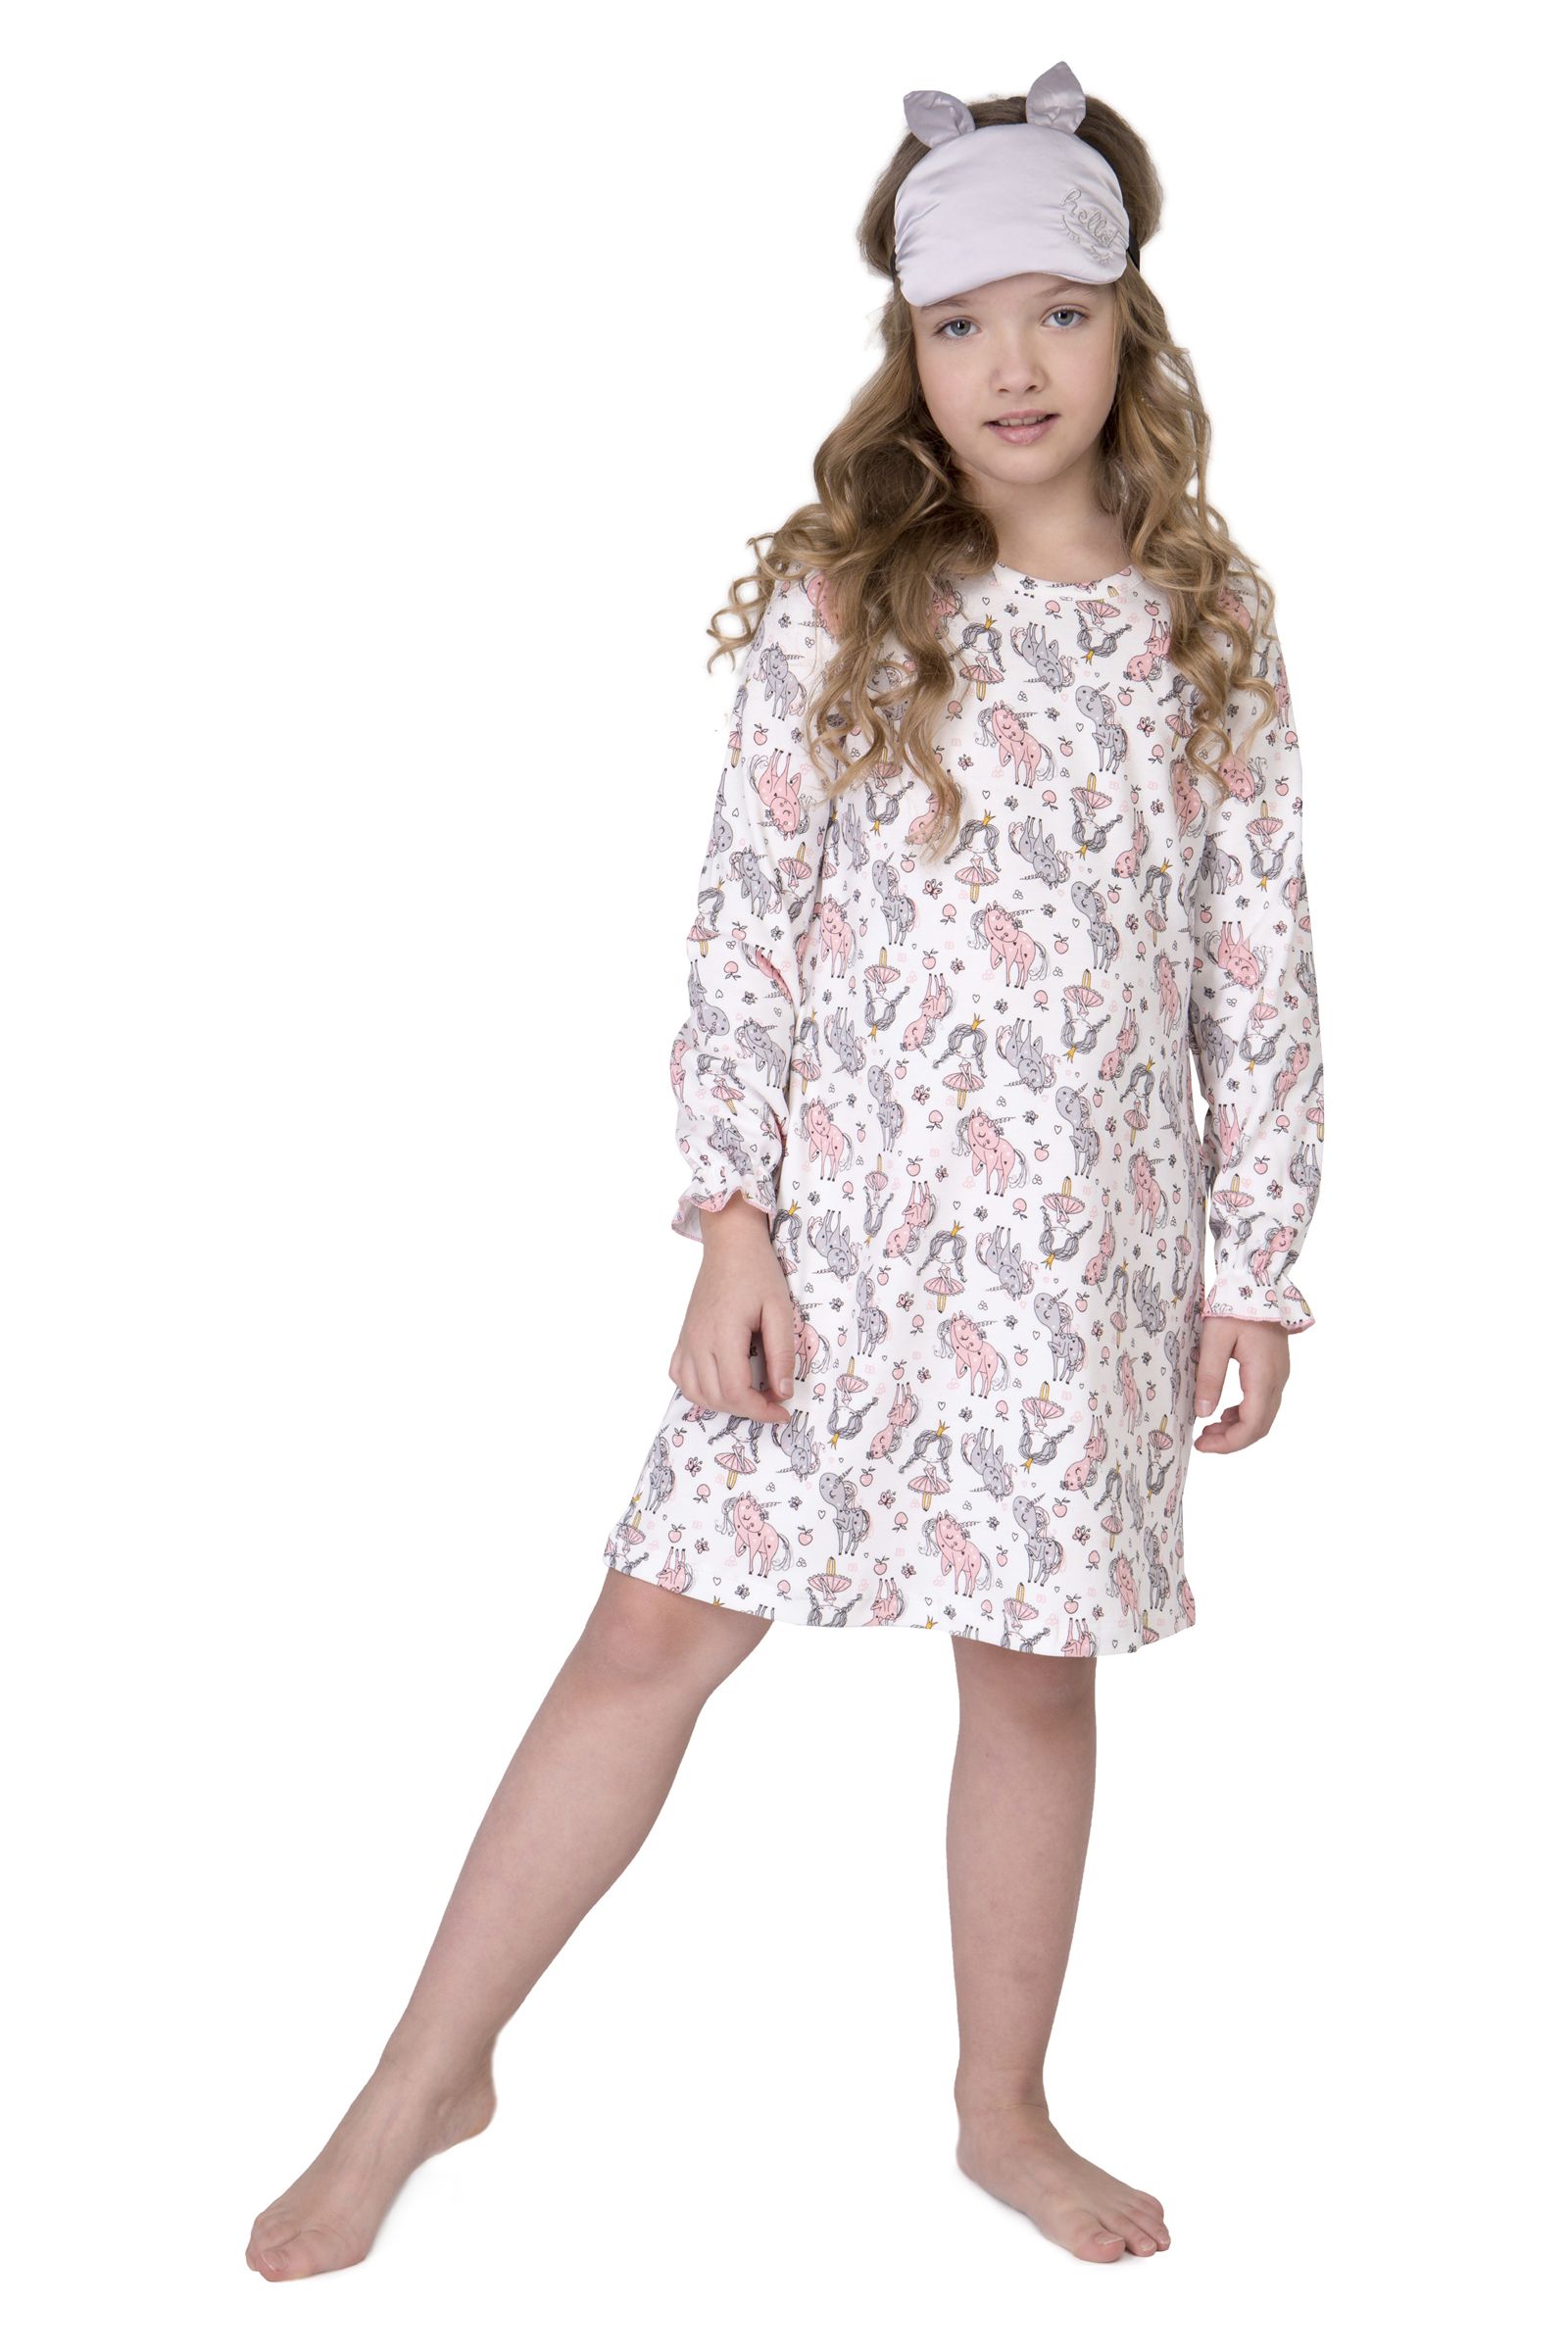 Сорочка-СР01-3850 оптом от производителя детской одежды 'Алёна'